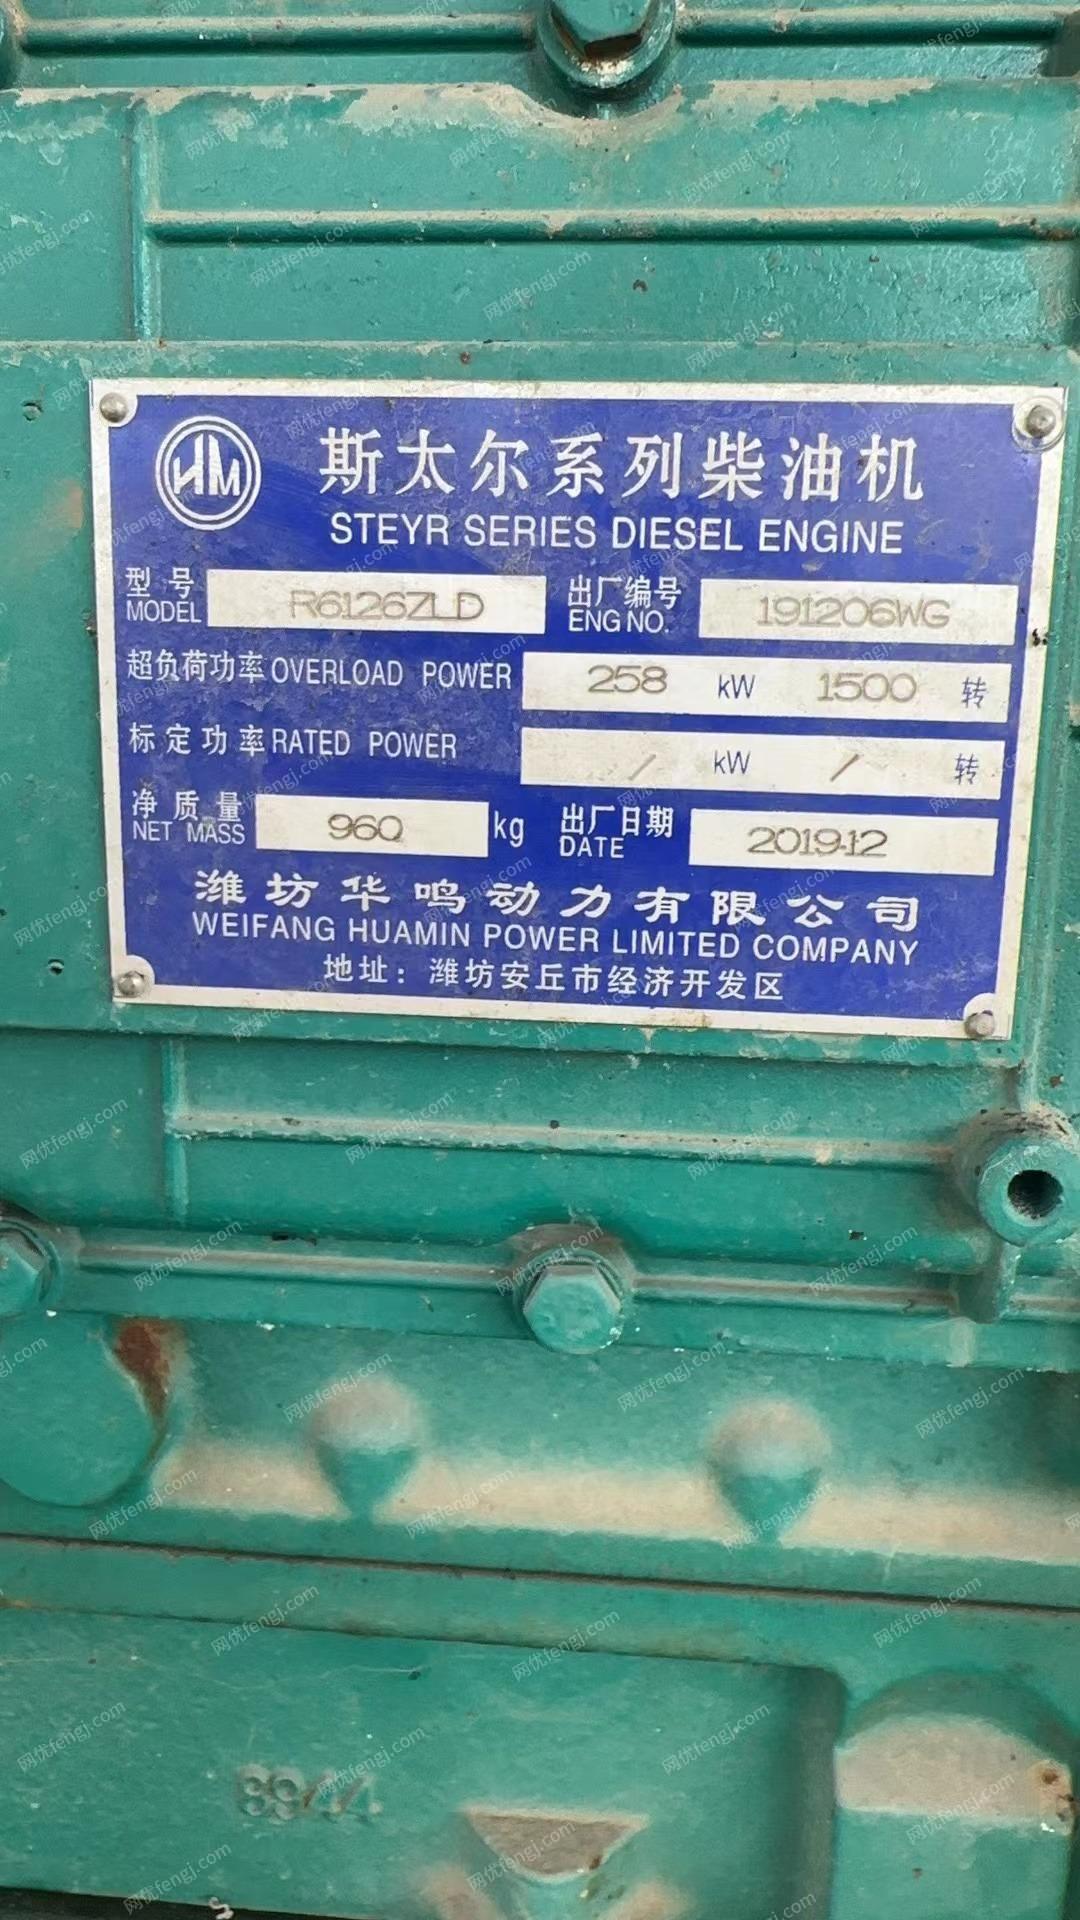 广东潮州整厂回收商处置日产1000方螺旋洗砂机3台